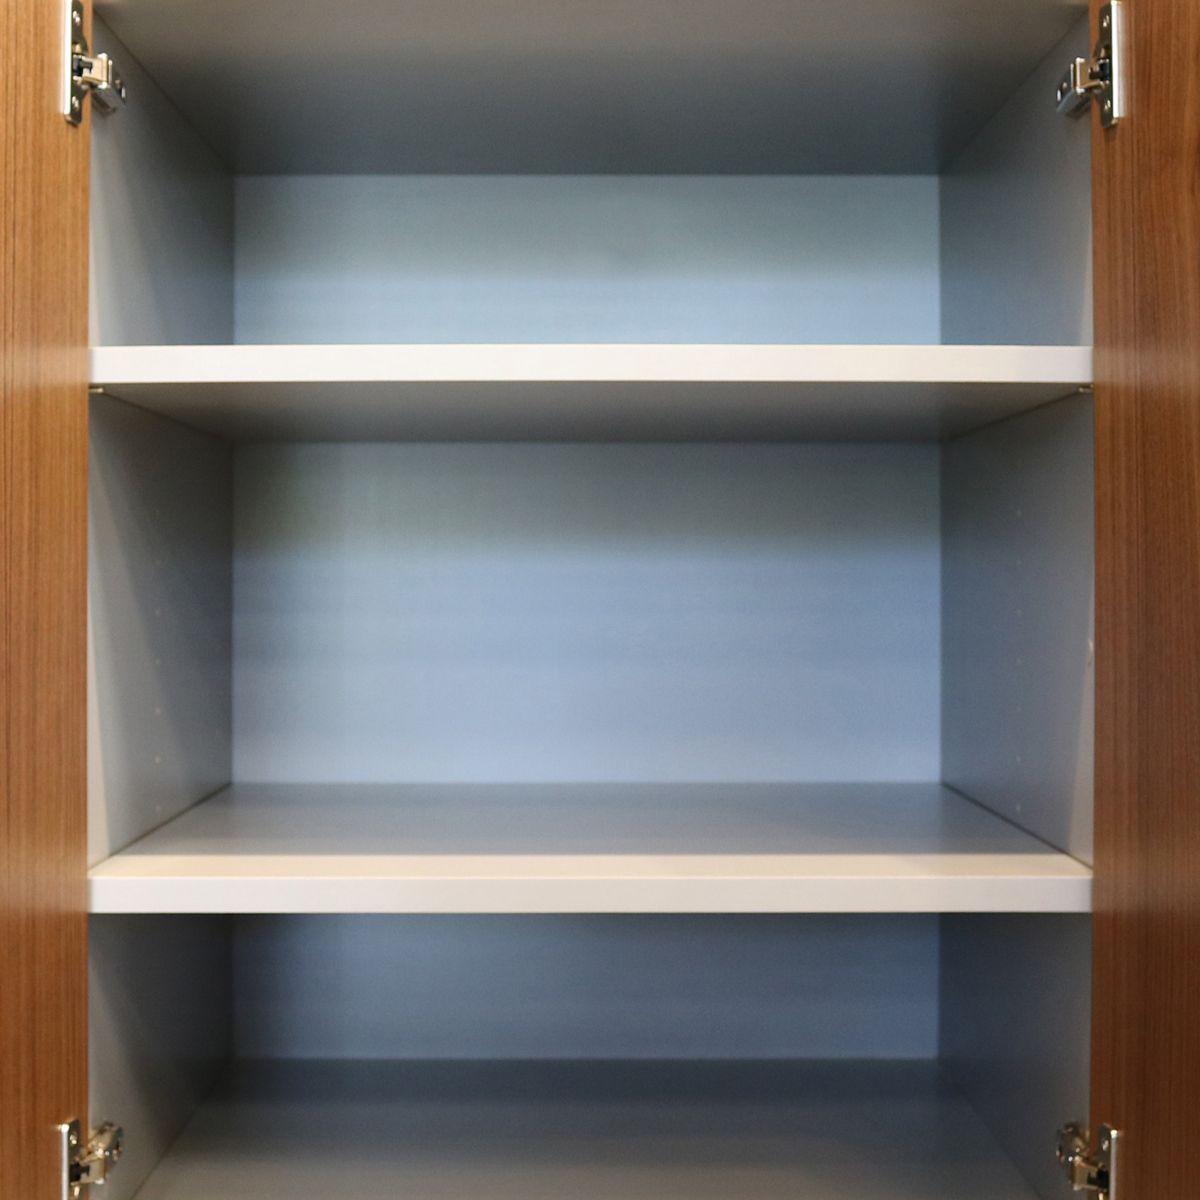 Inside of cabinet, white shelves